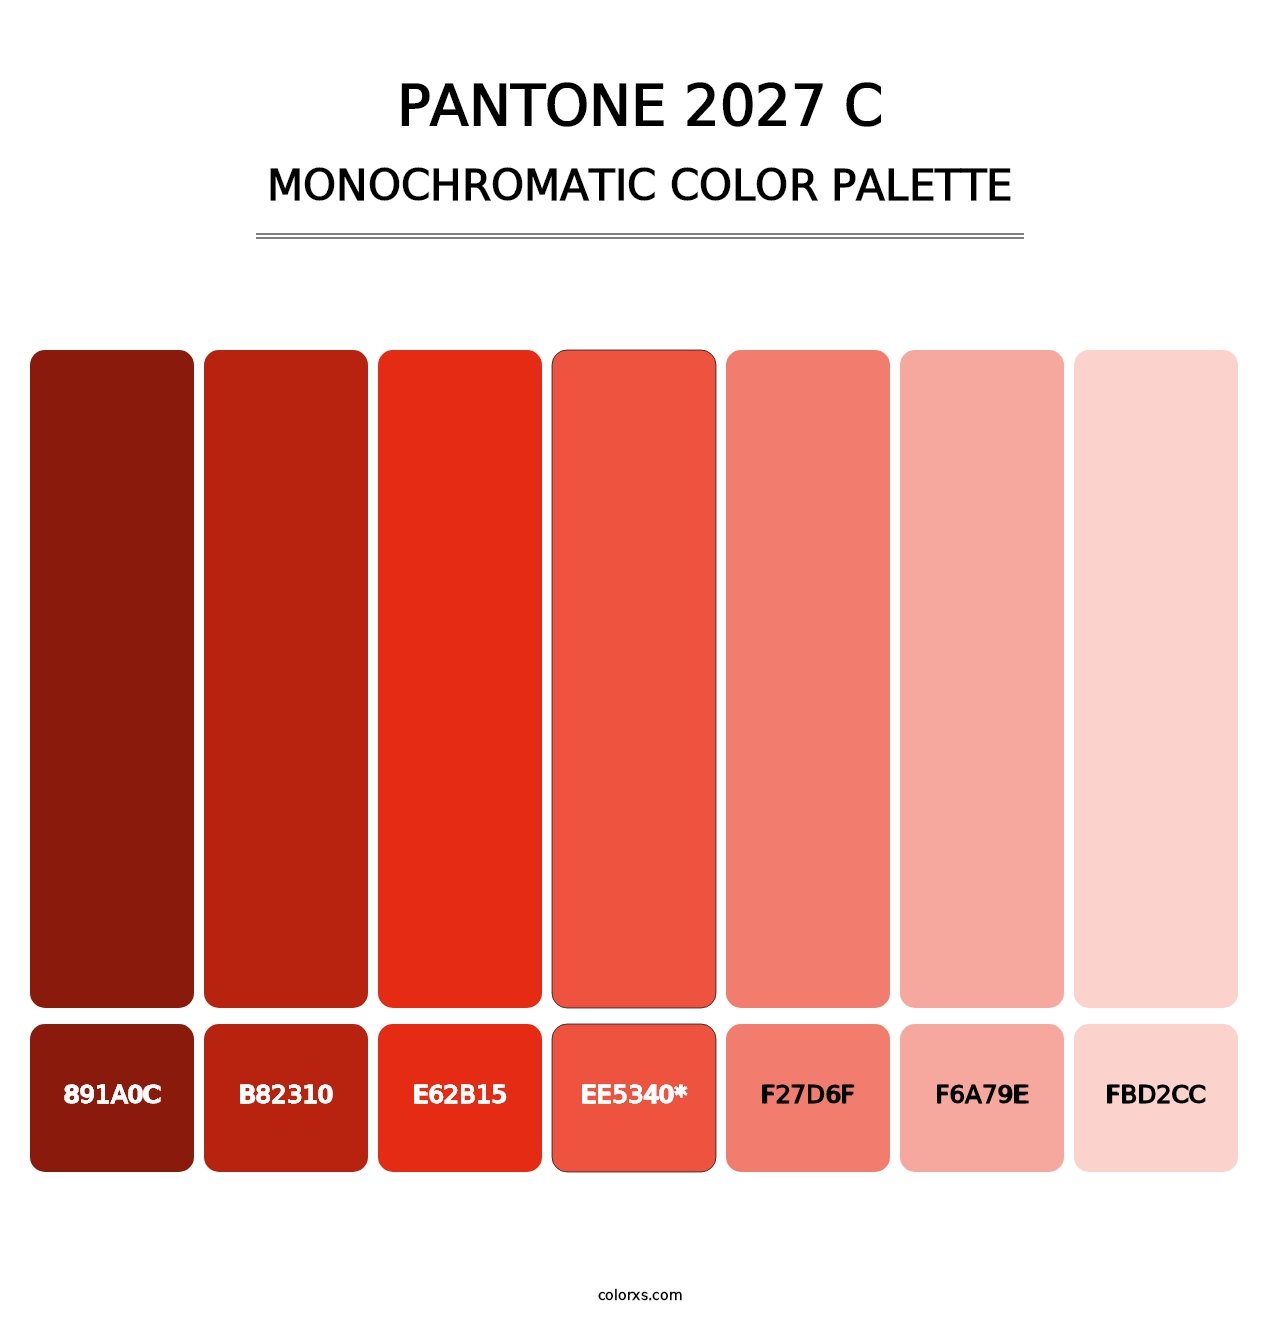 PANTONE 2027 C - Monochromatic Color Palette